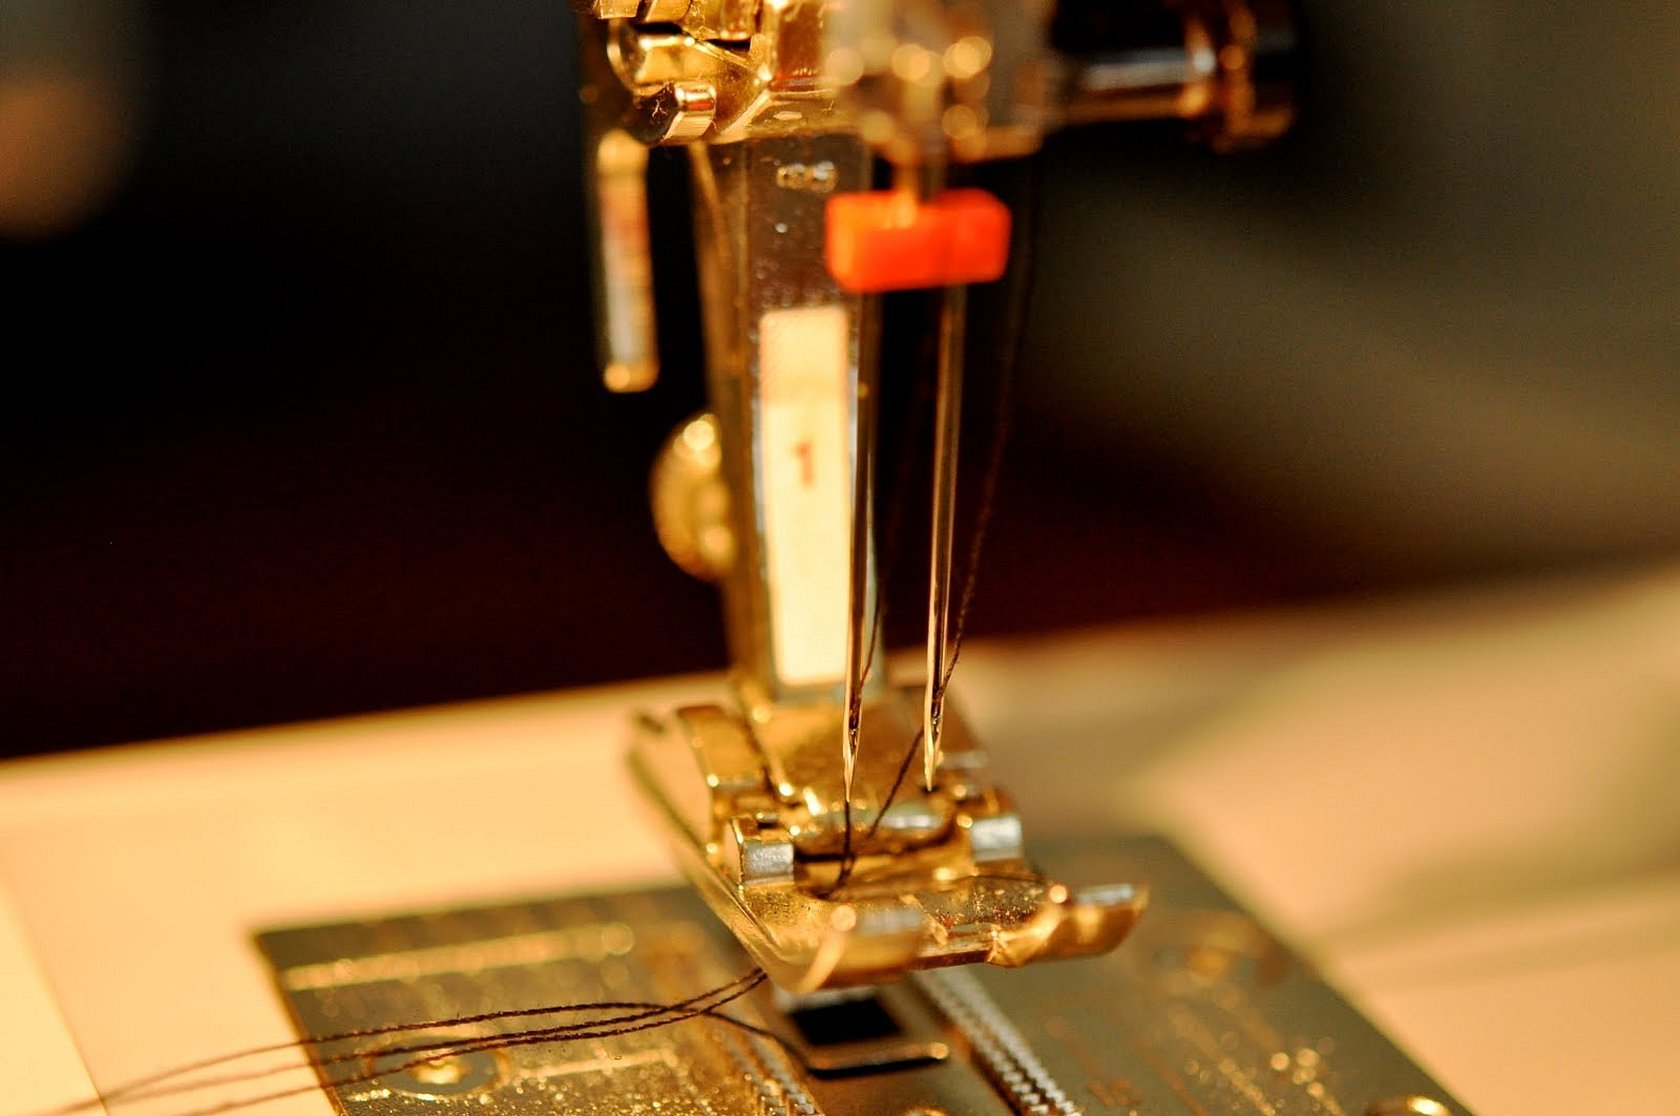 Какие нитки нужны для швейных машин: как выбрать, толщина, самые прочные